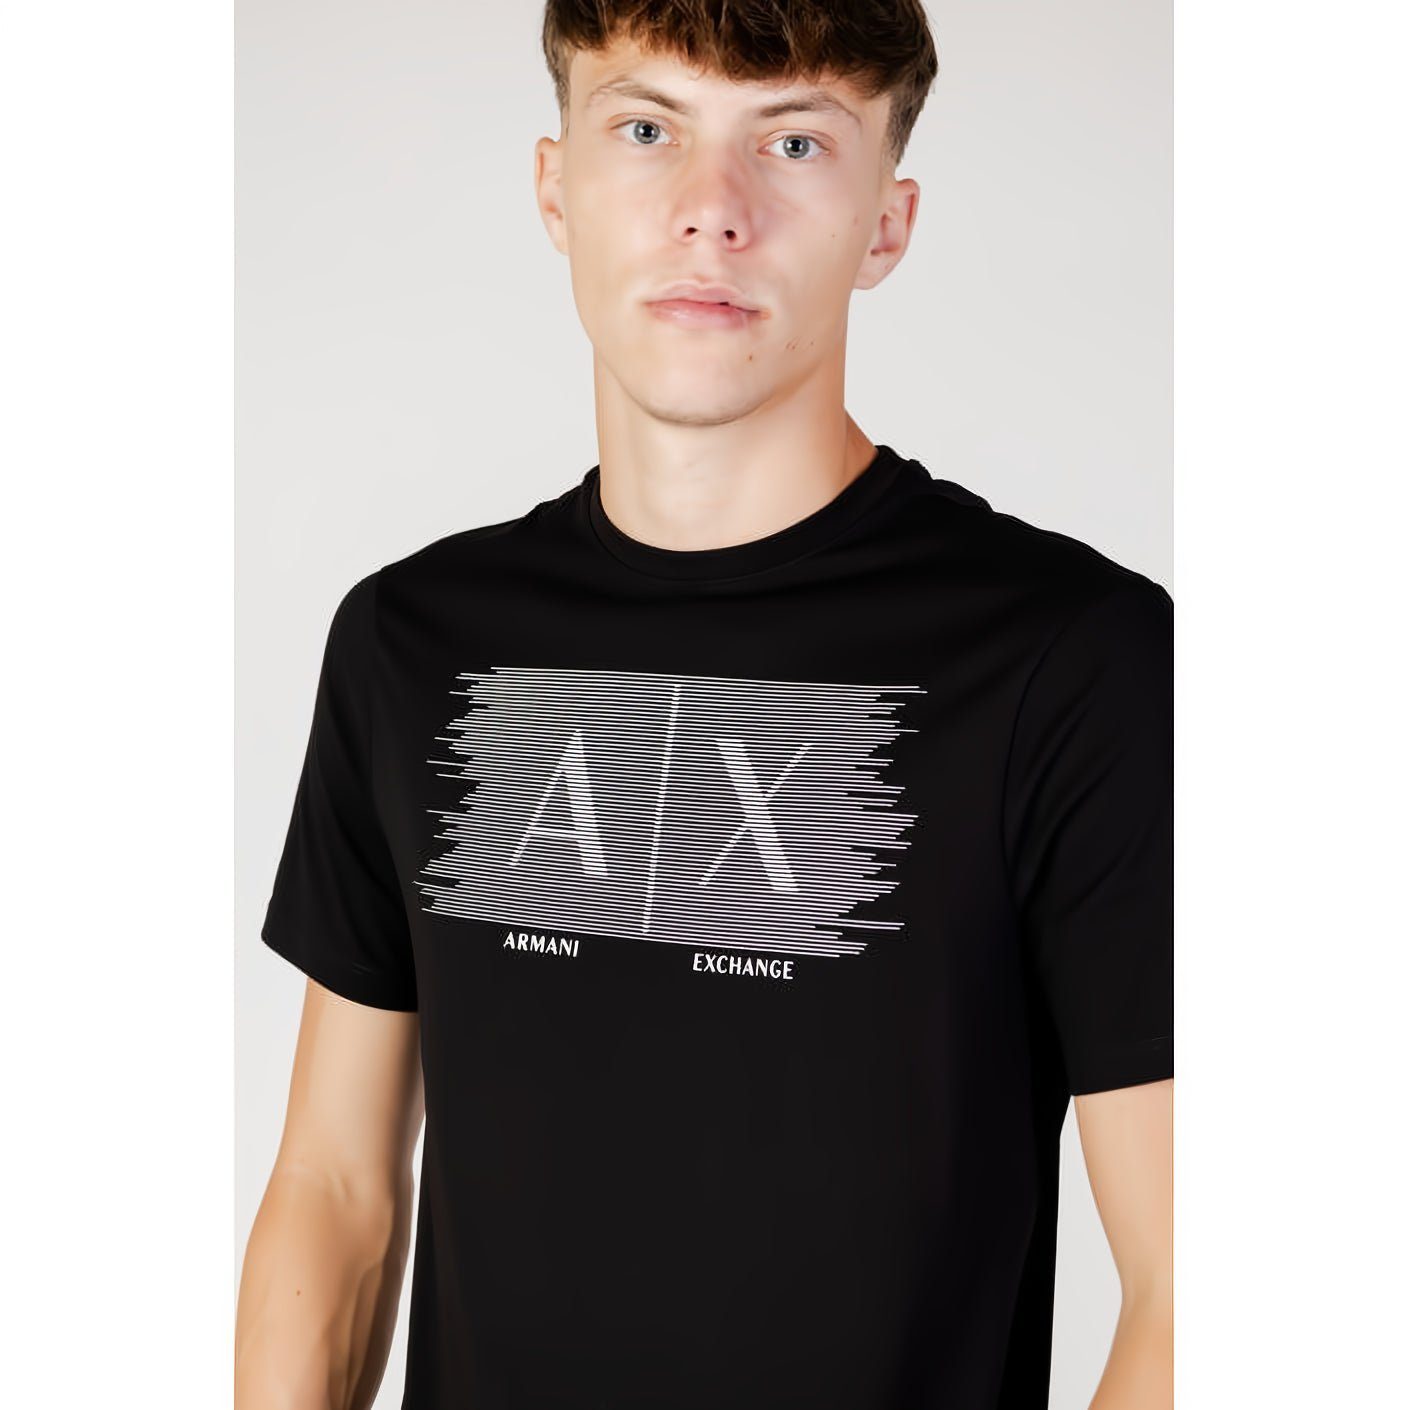 ARMANI EXCHANGE T-Shirt kurzarm, Rundhals, Kleidungskollektion! für Must-Have ein Ihre